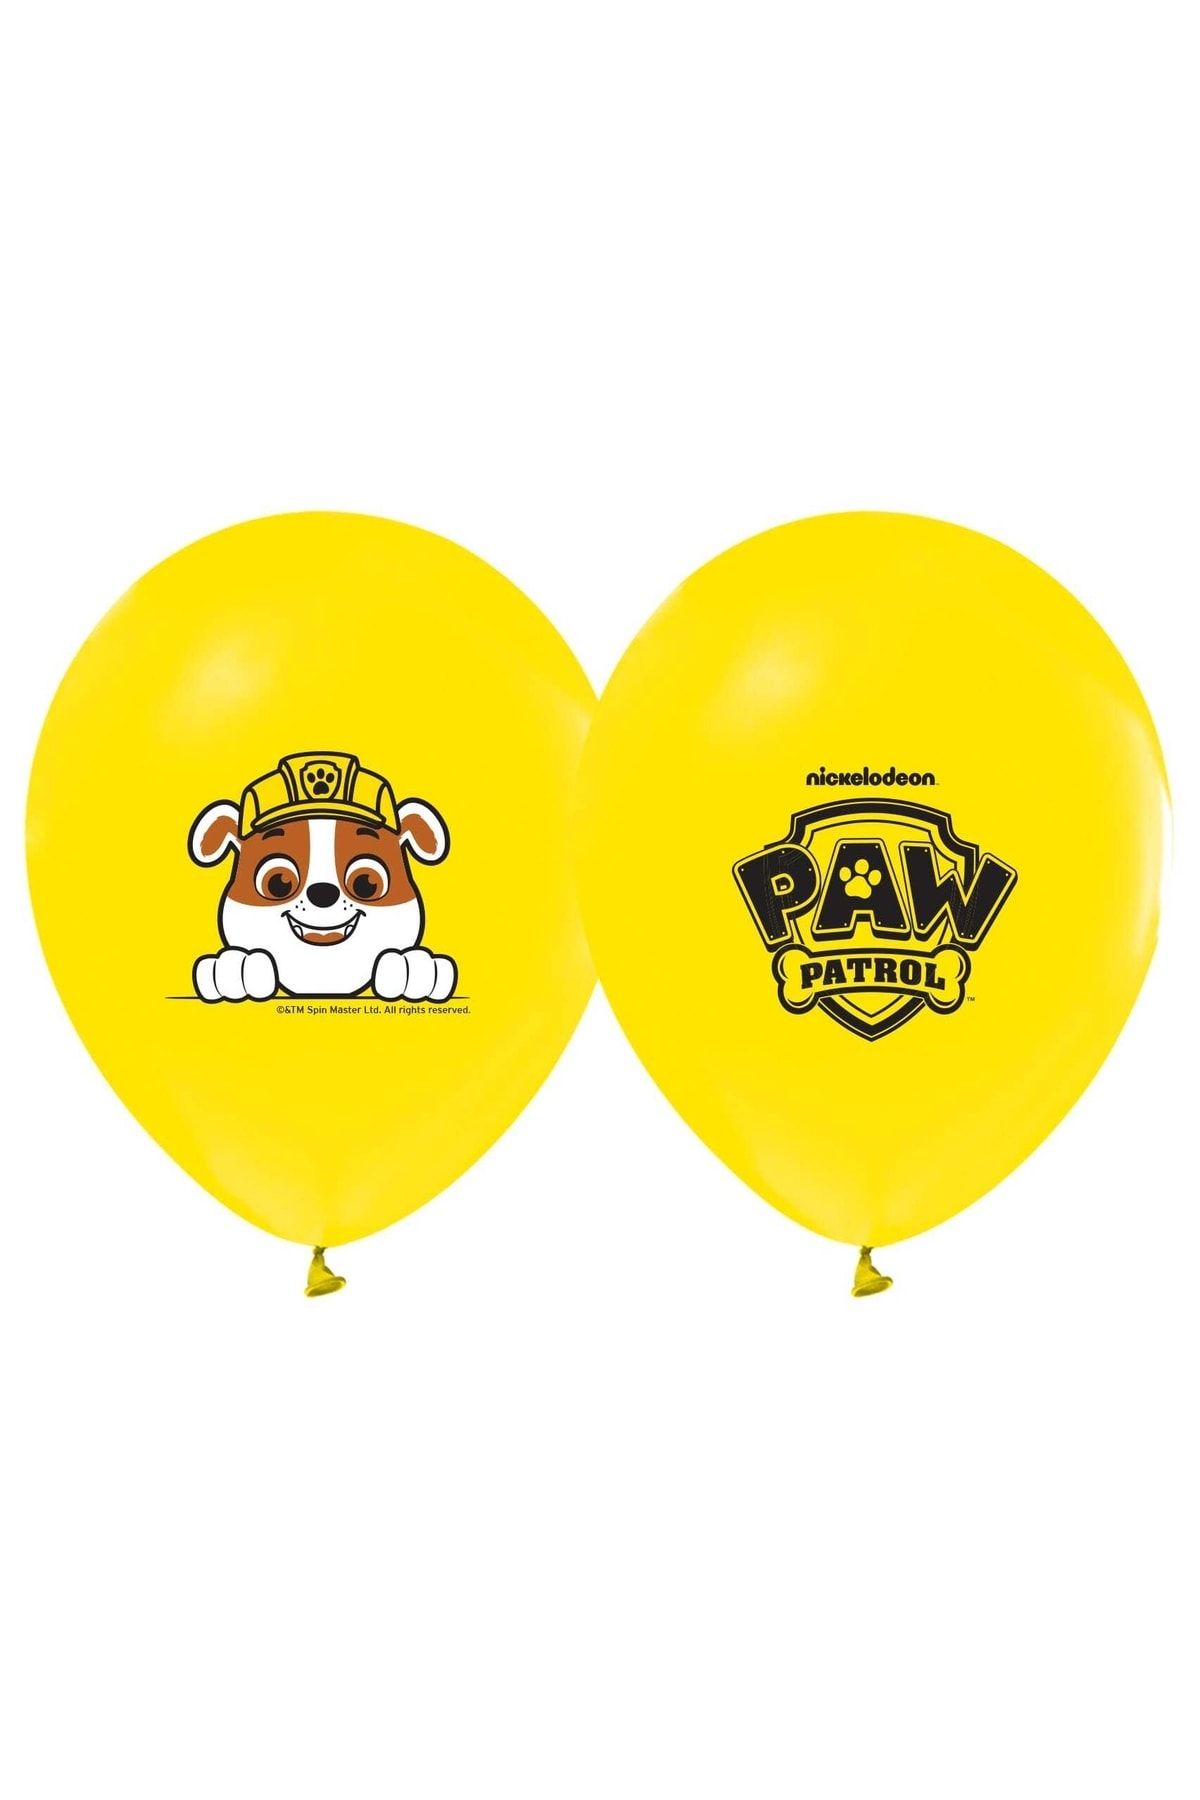 PAW PATROL Baskılı Balon 5 Adet Sarı Renk